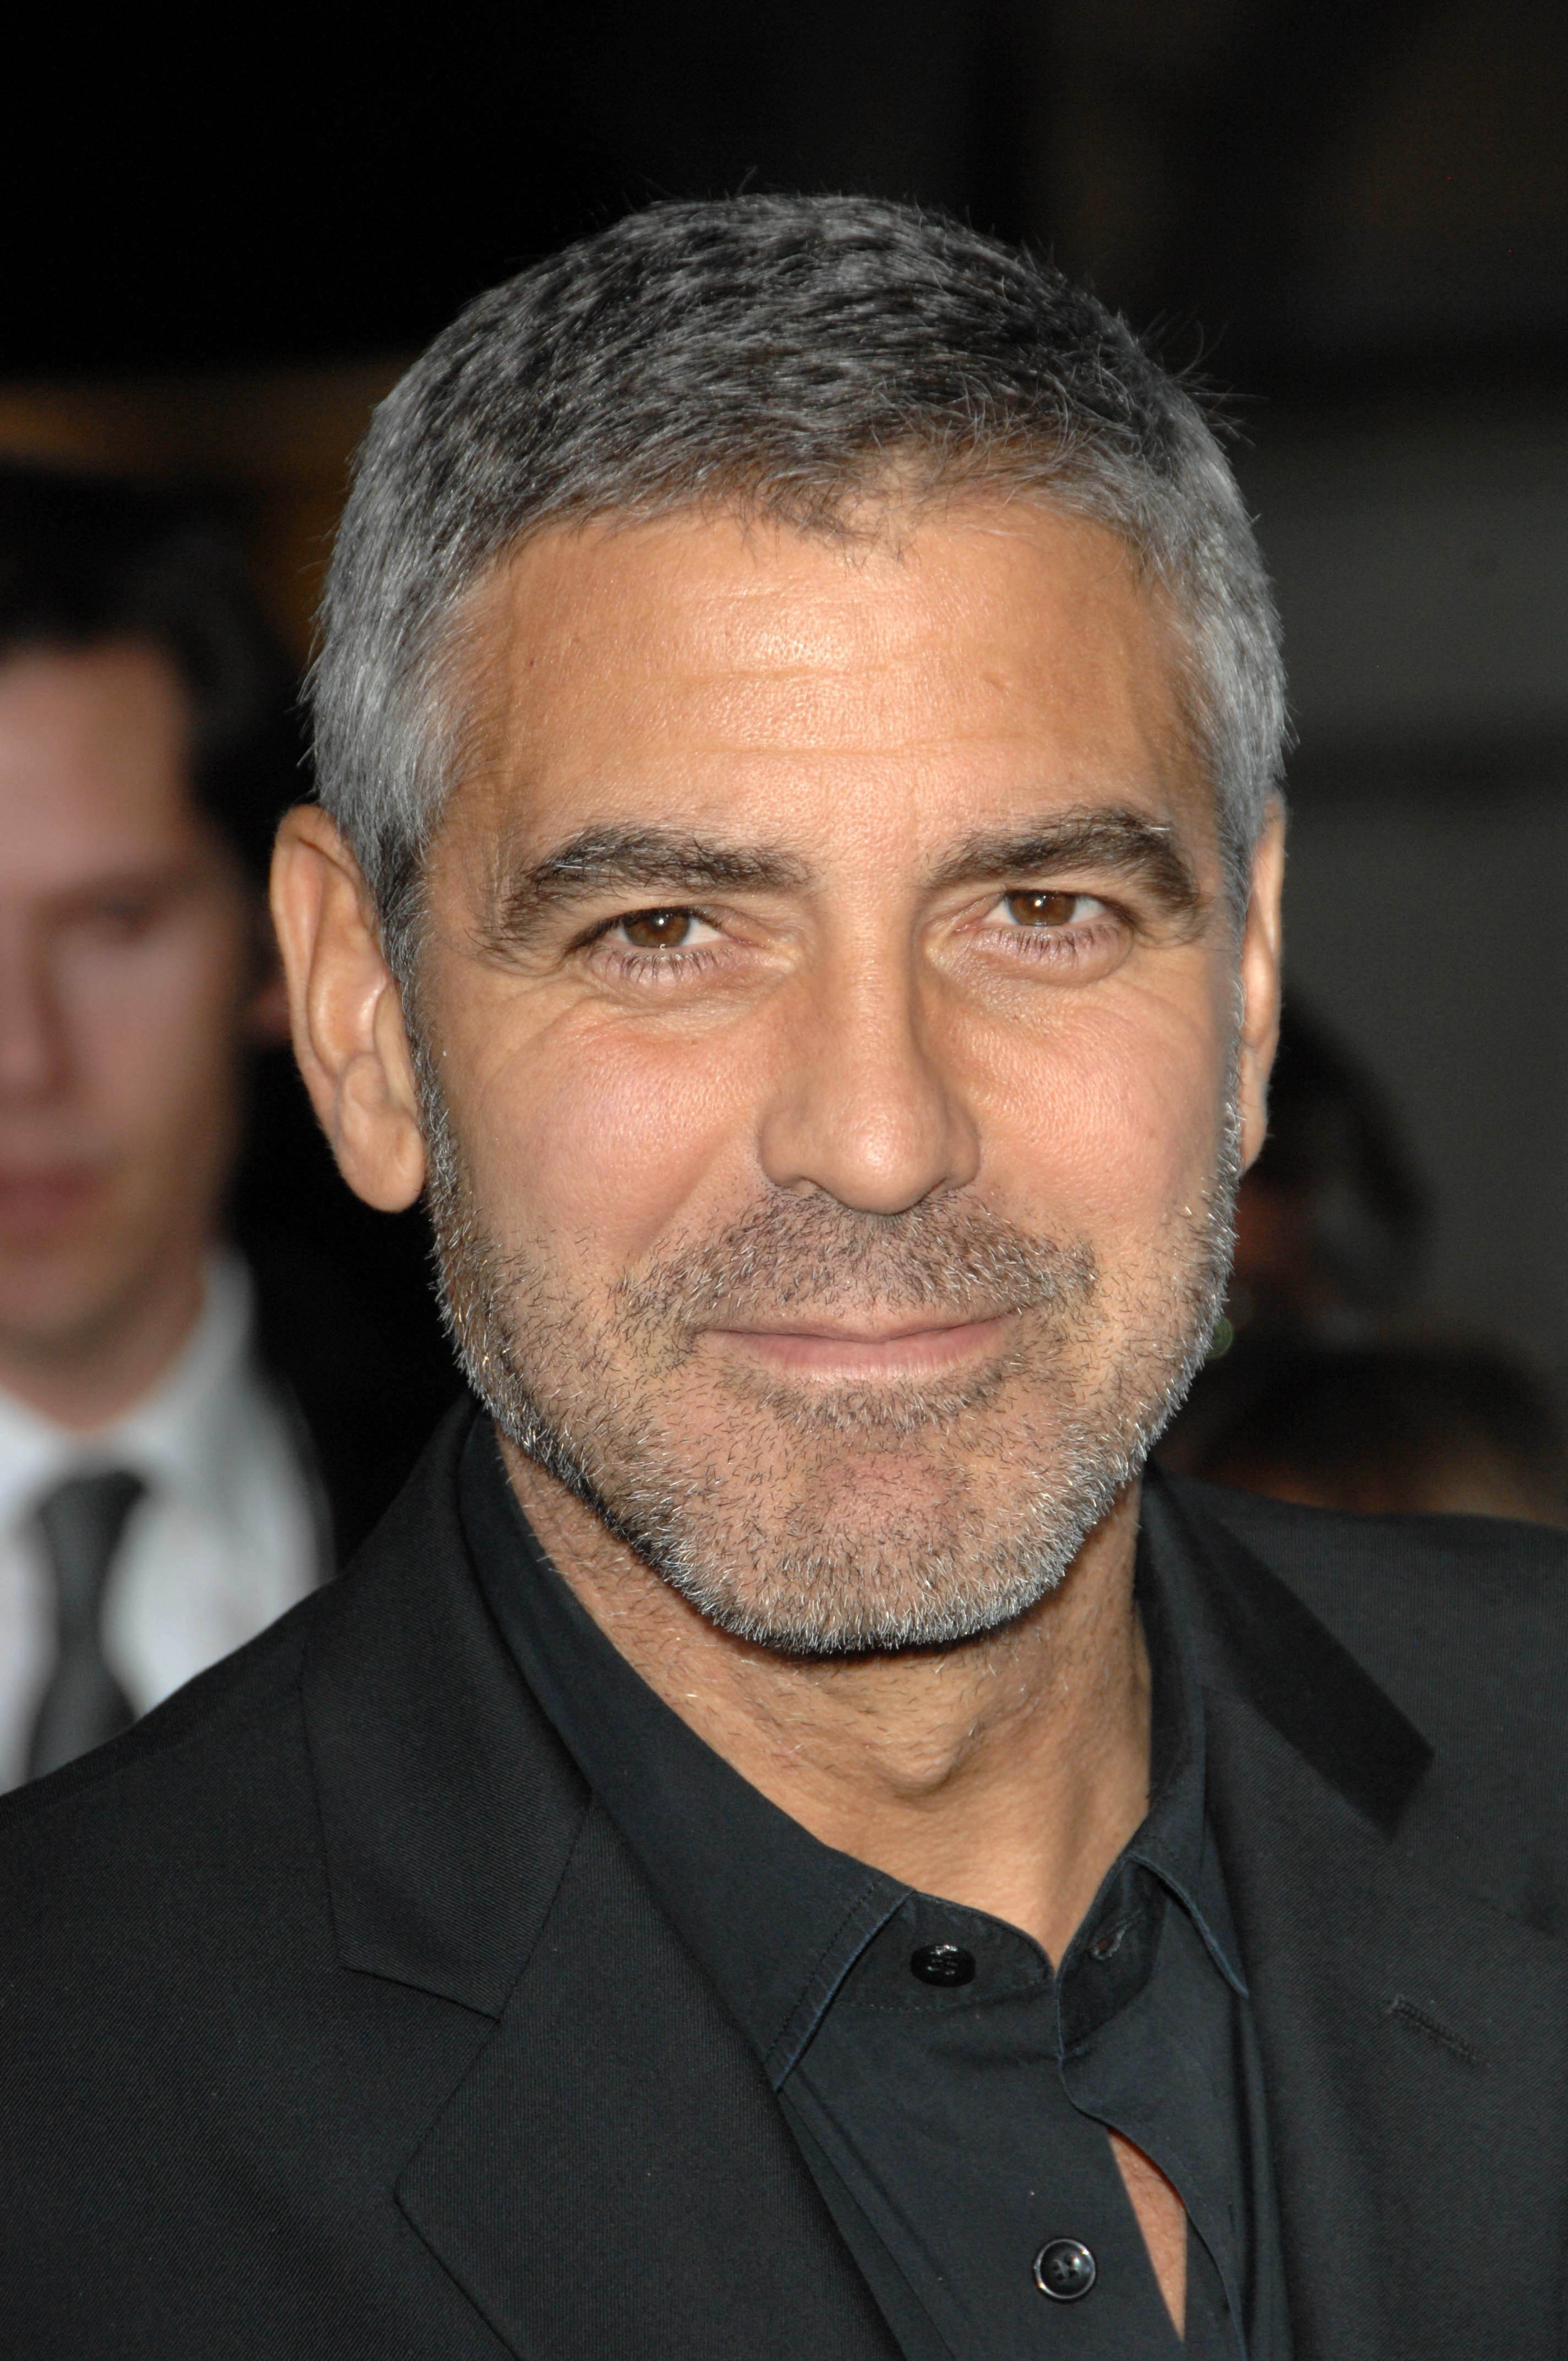 George Clooney en el estreno de "Up In The Air", Mann Village Theatre, Westwood, CA. Fuente: Shutterstock